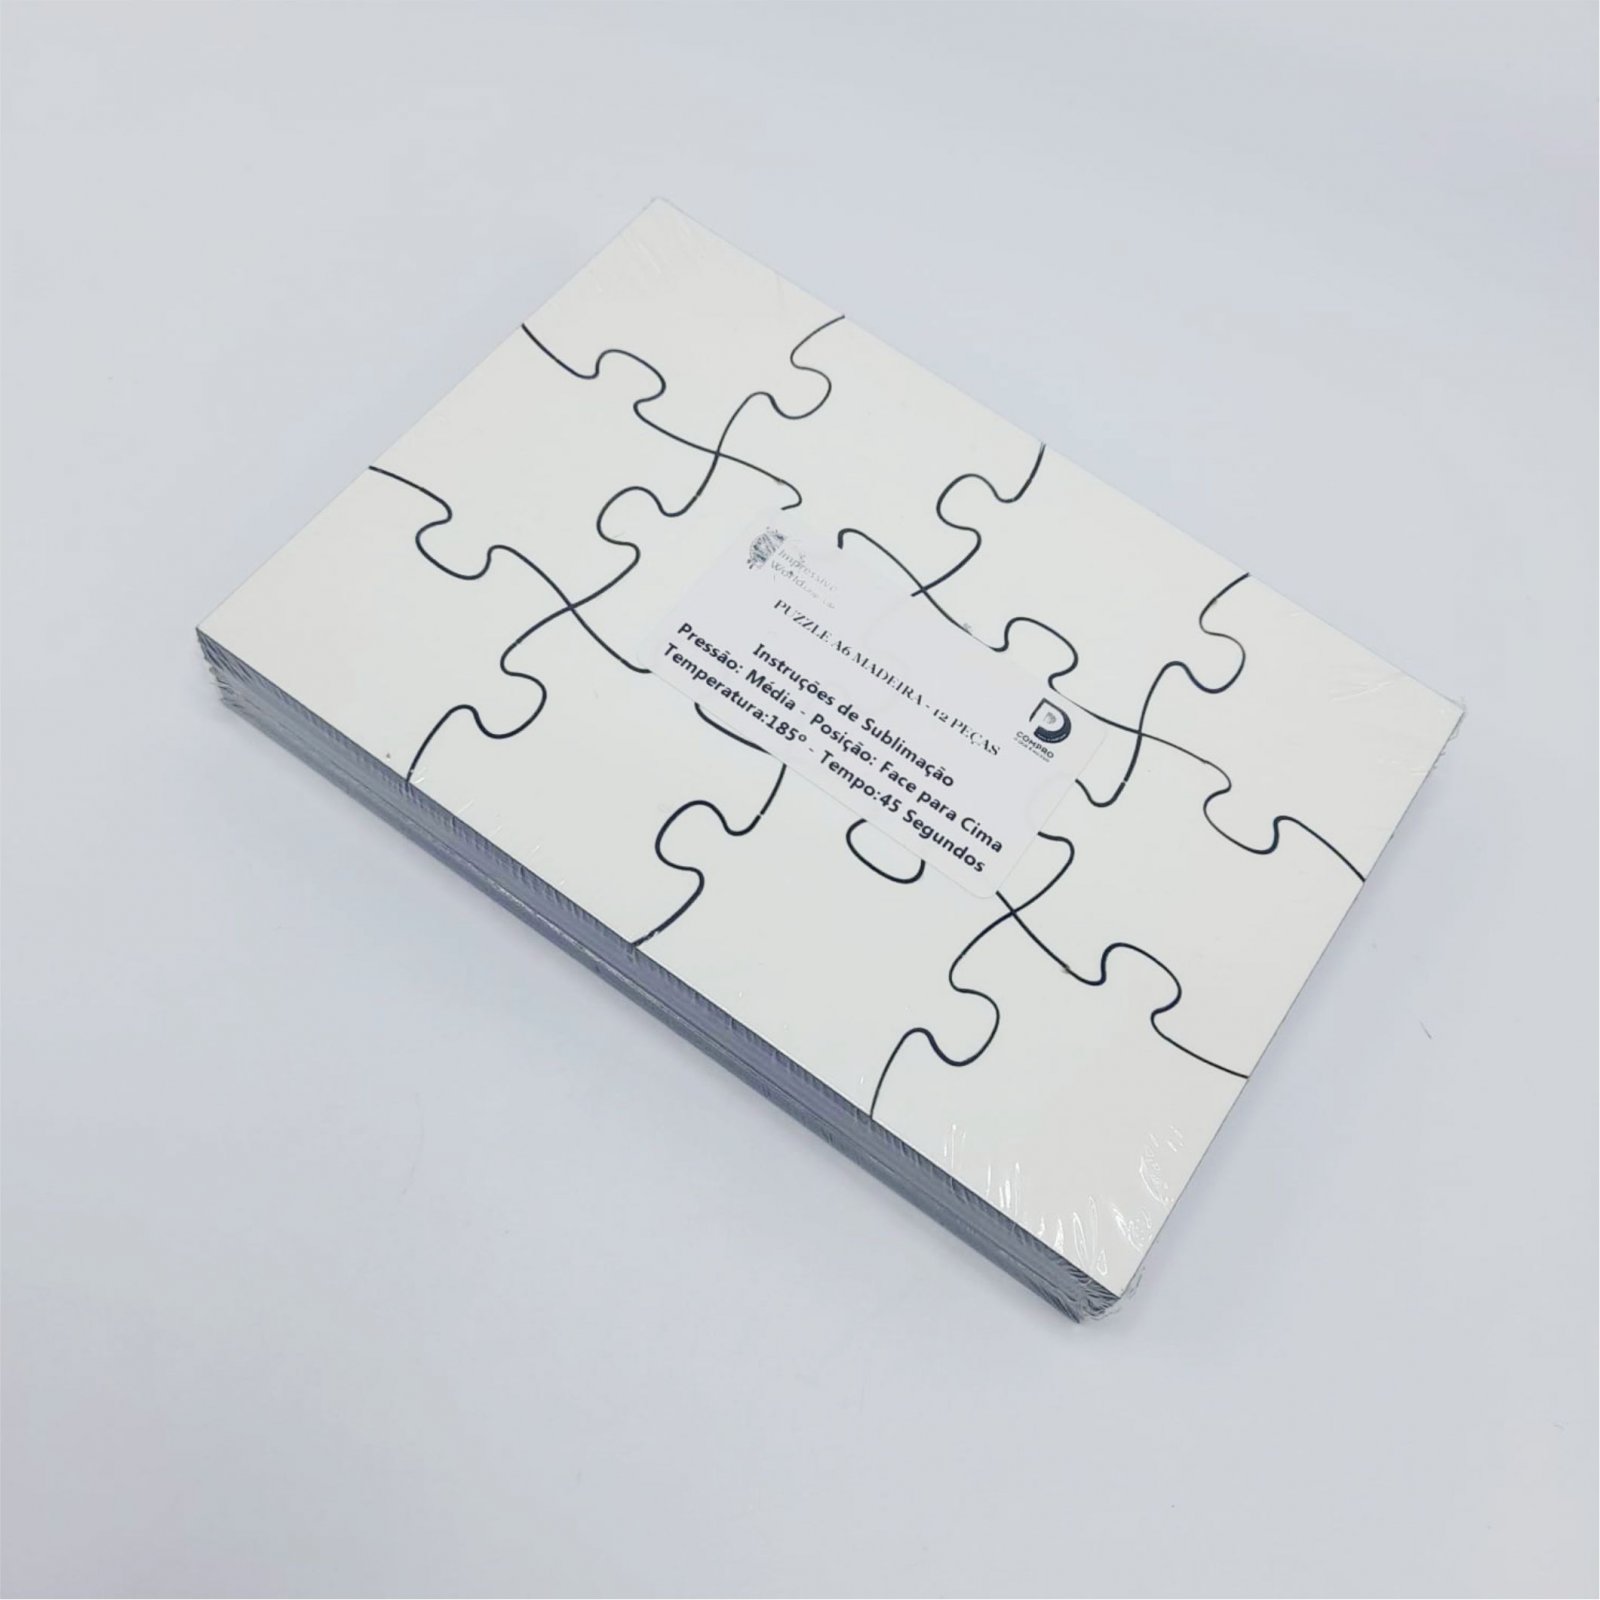 Puzzle em Madeira A5 Branco com 12 Peças